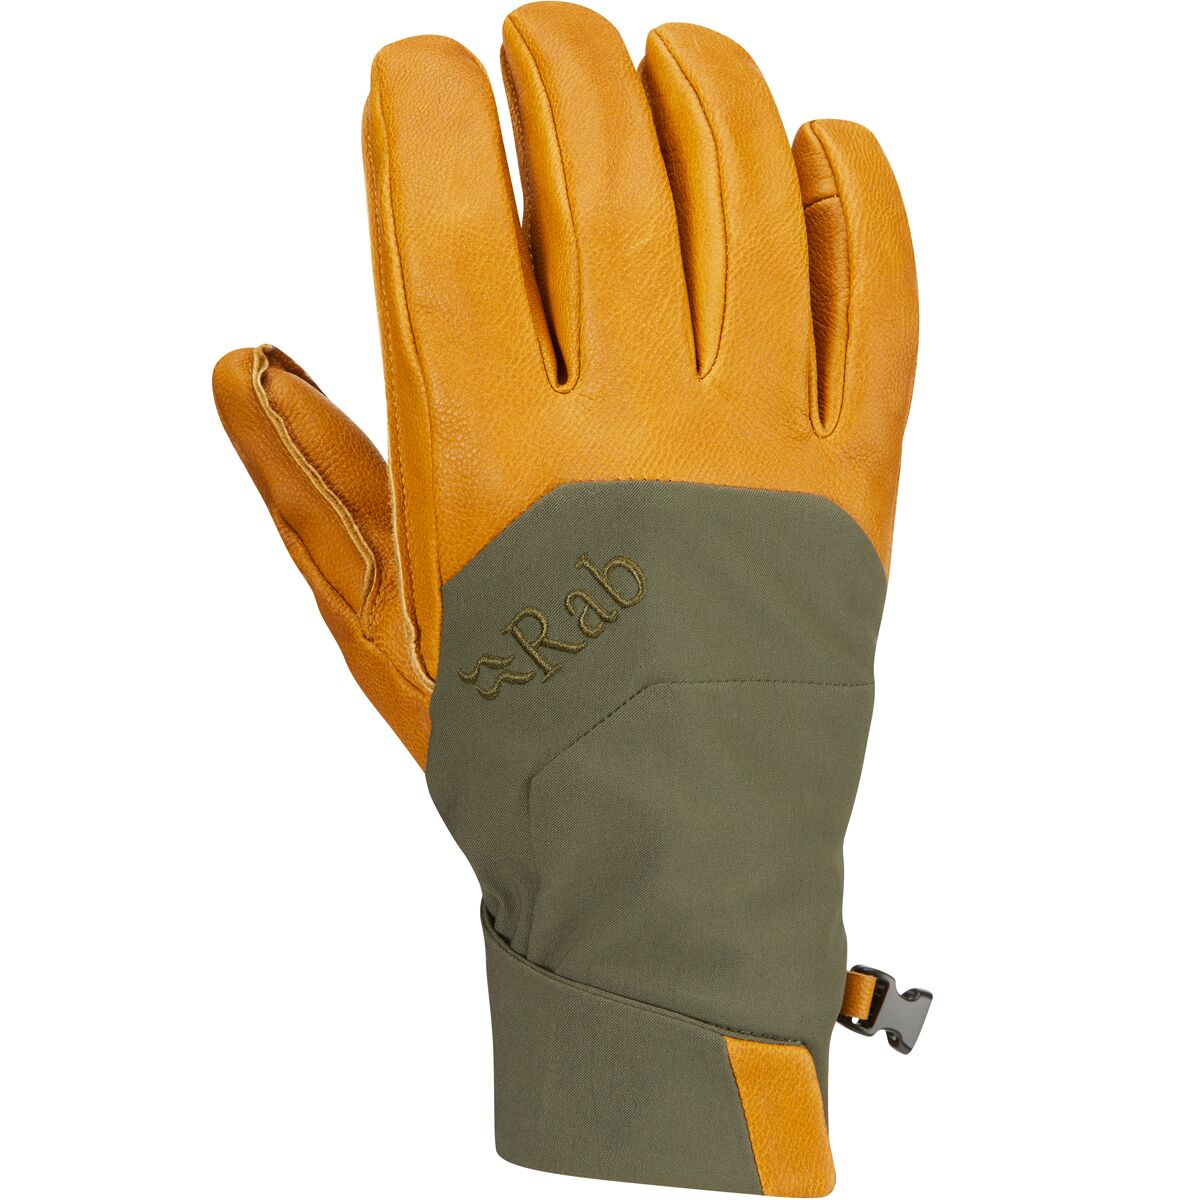 Rab Khroma Tour GORE-TEX INFINIUM Glove - Men's